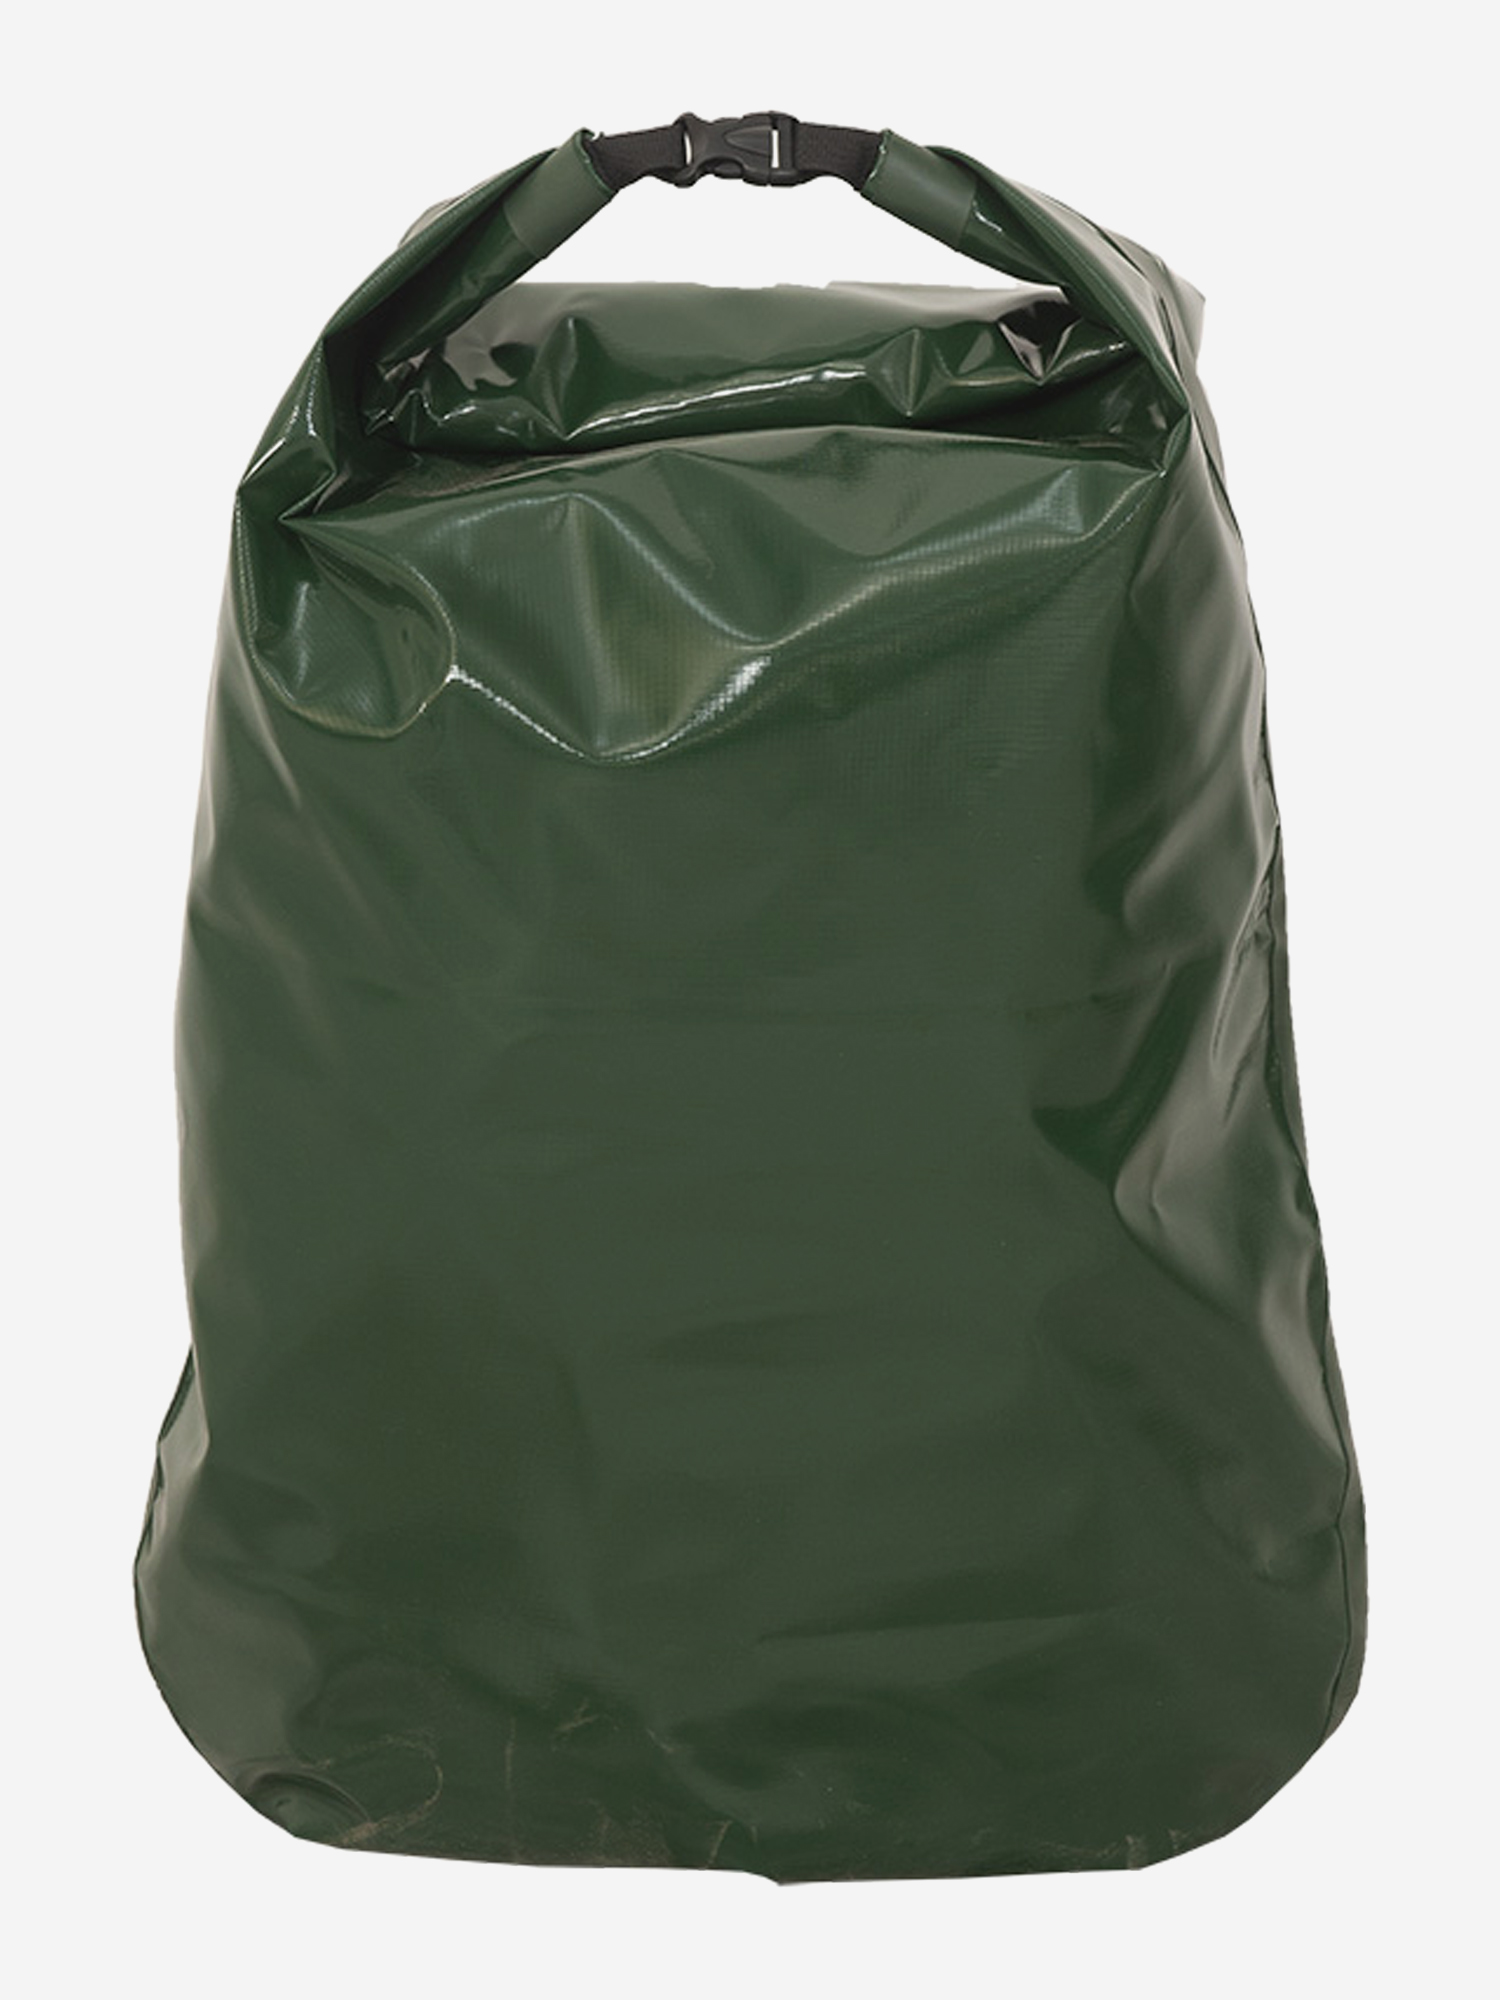 Гермомешок Ковчег 120, Зеленый сумка гермомешок greenhouse 5л зеленая зеленый